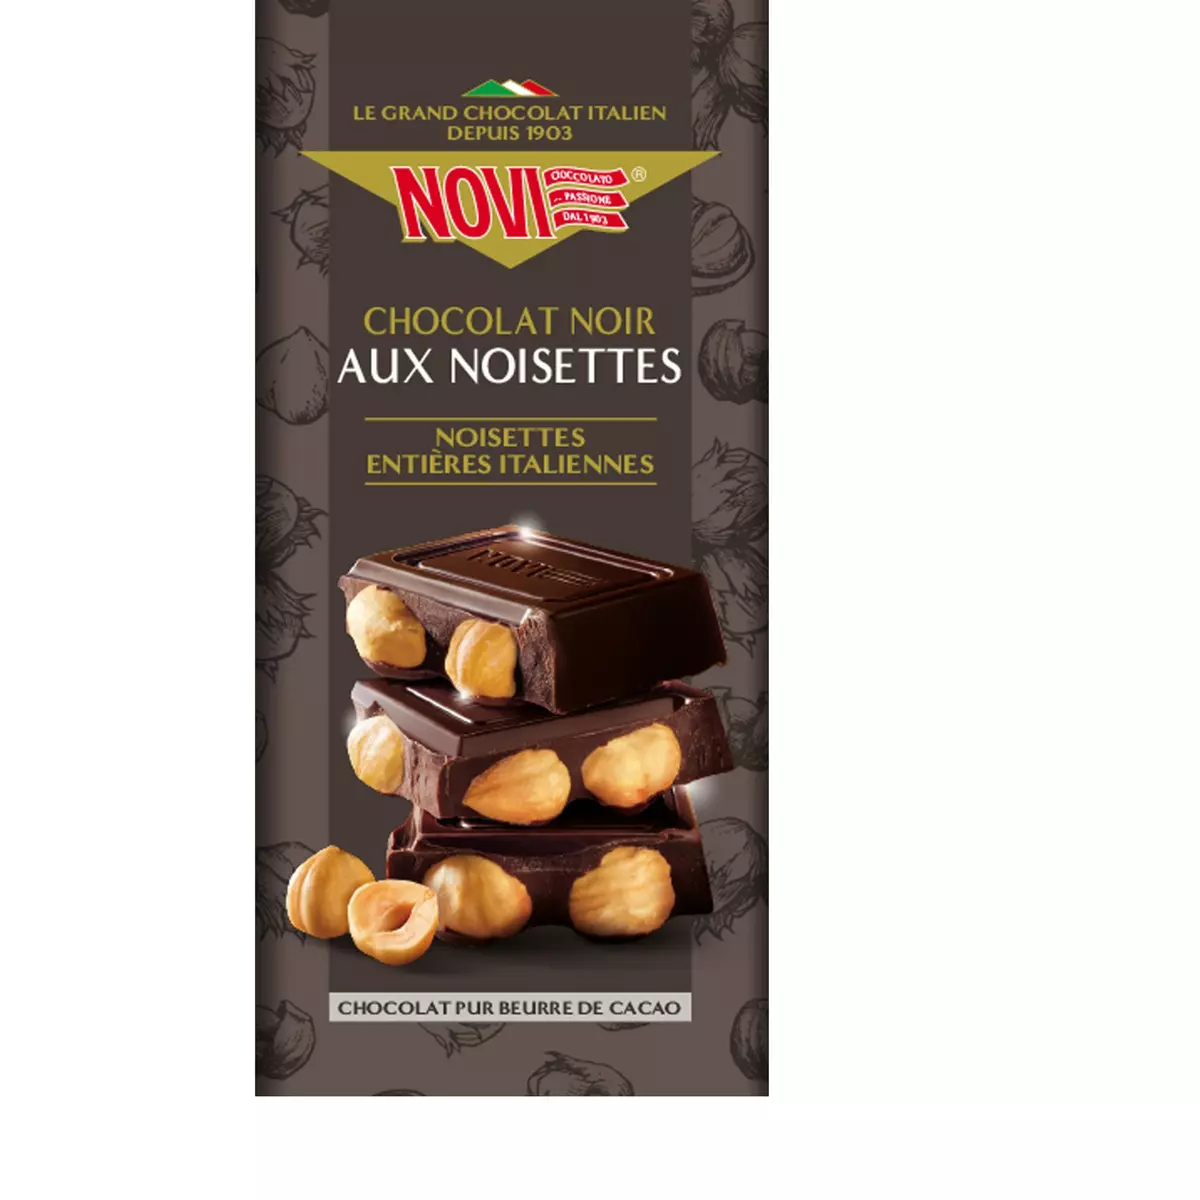 NOVI Tablette de chocolat noir aux noisettes 1 pièce 130g